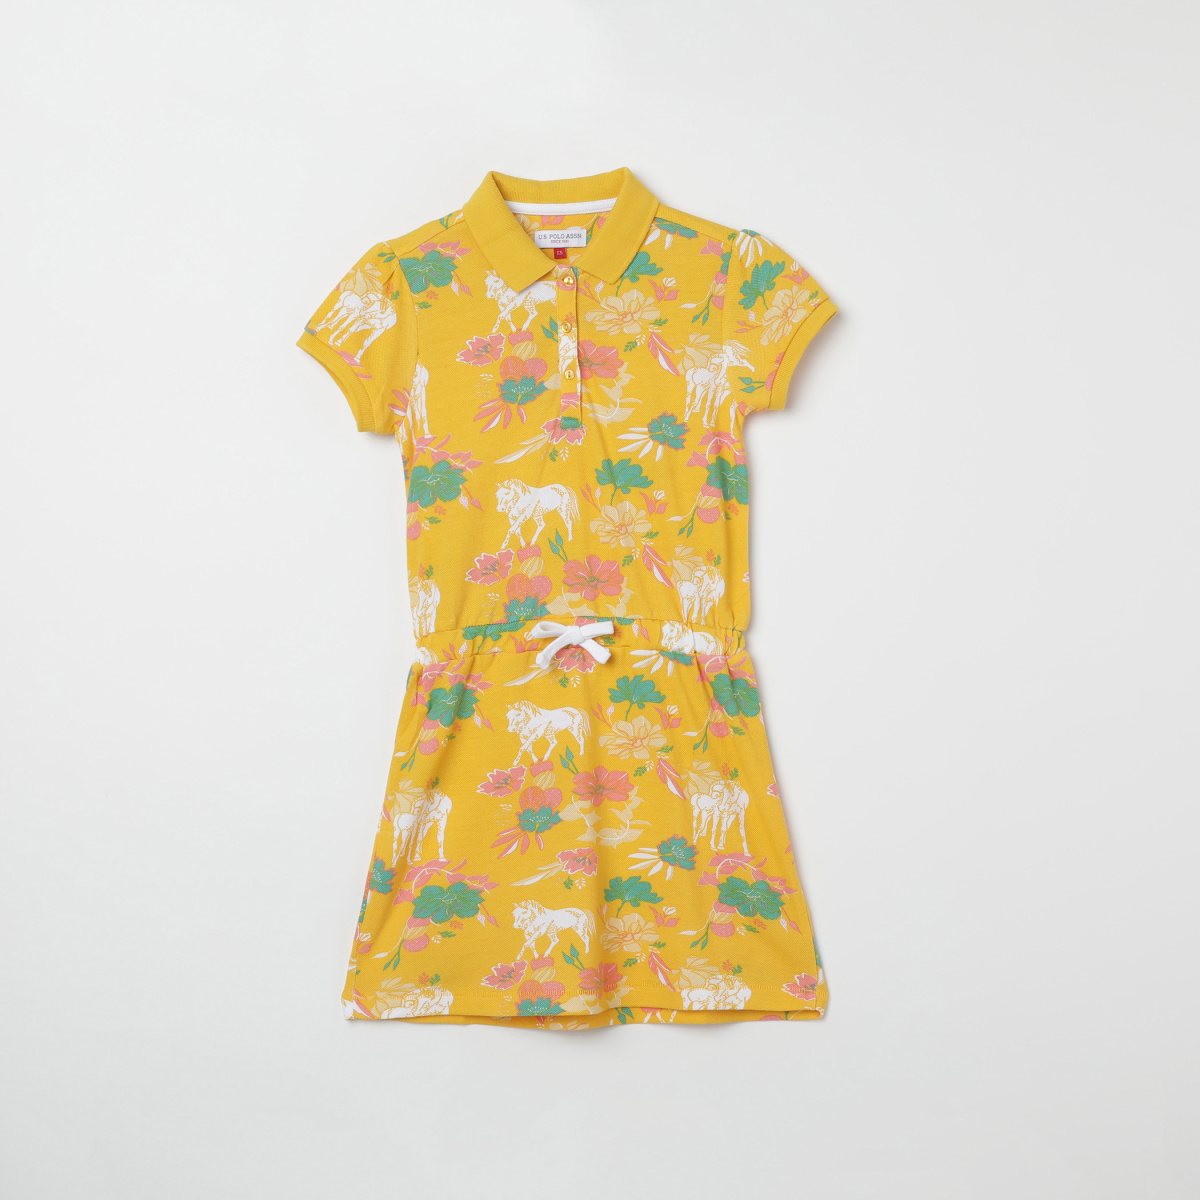 U.S. POLO ASSN. KIDS Floral Print T-shirt Dress